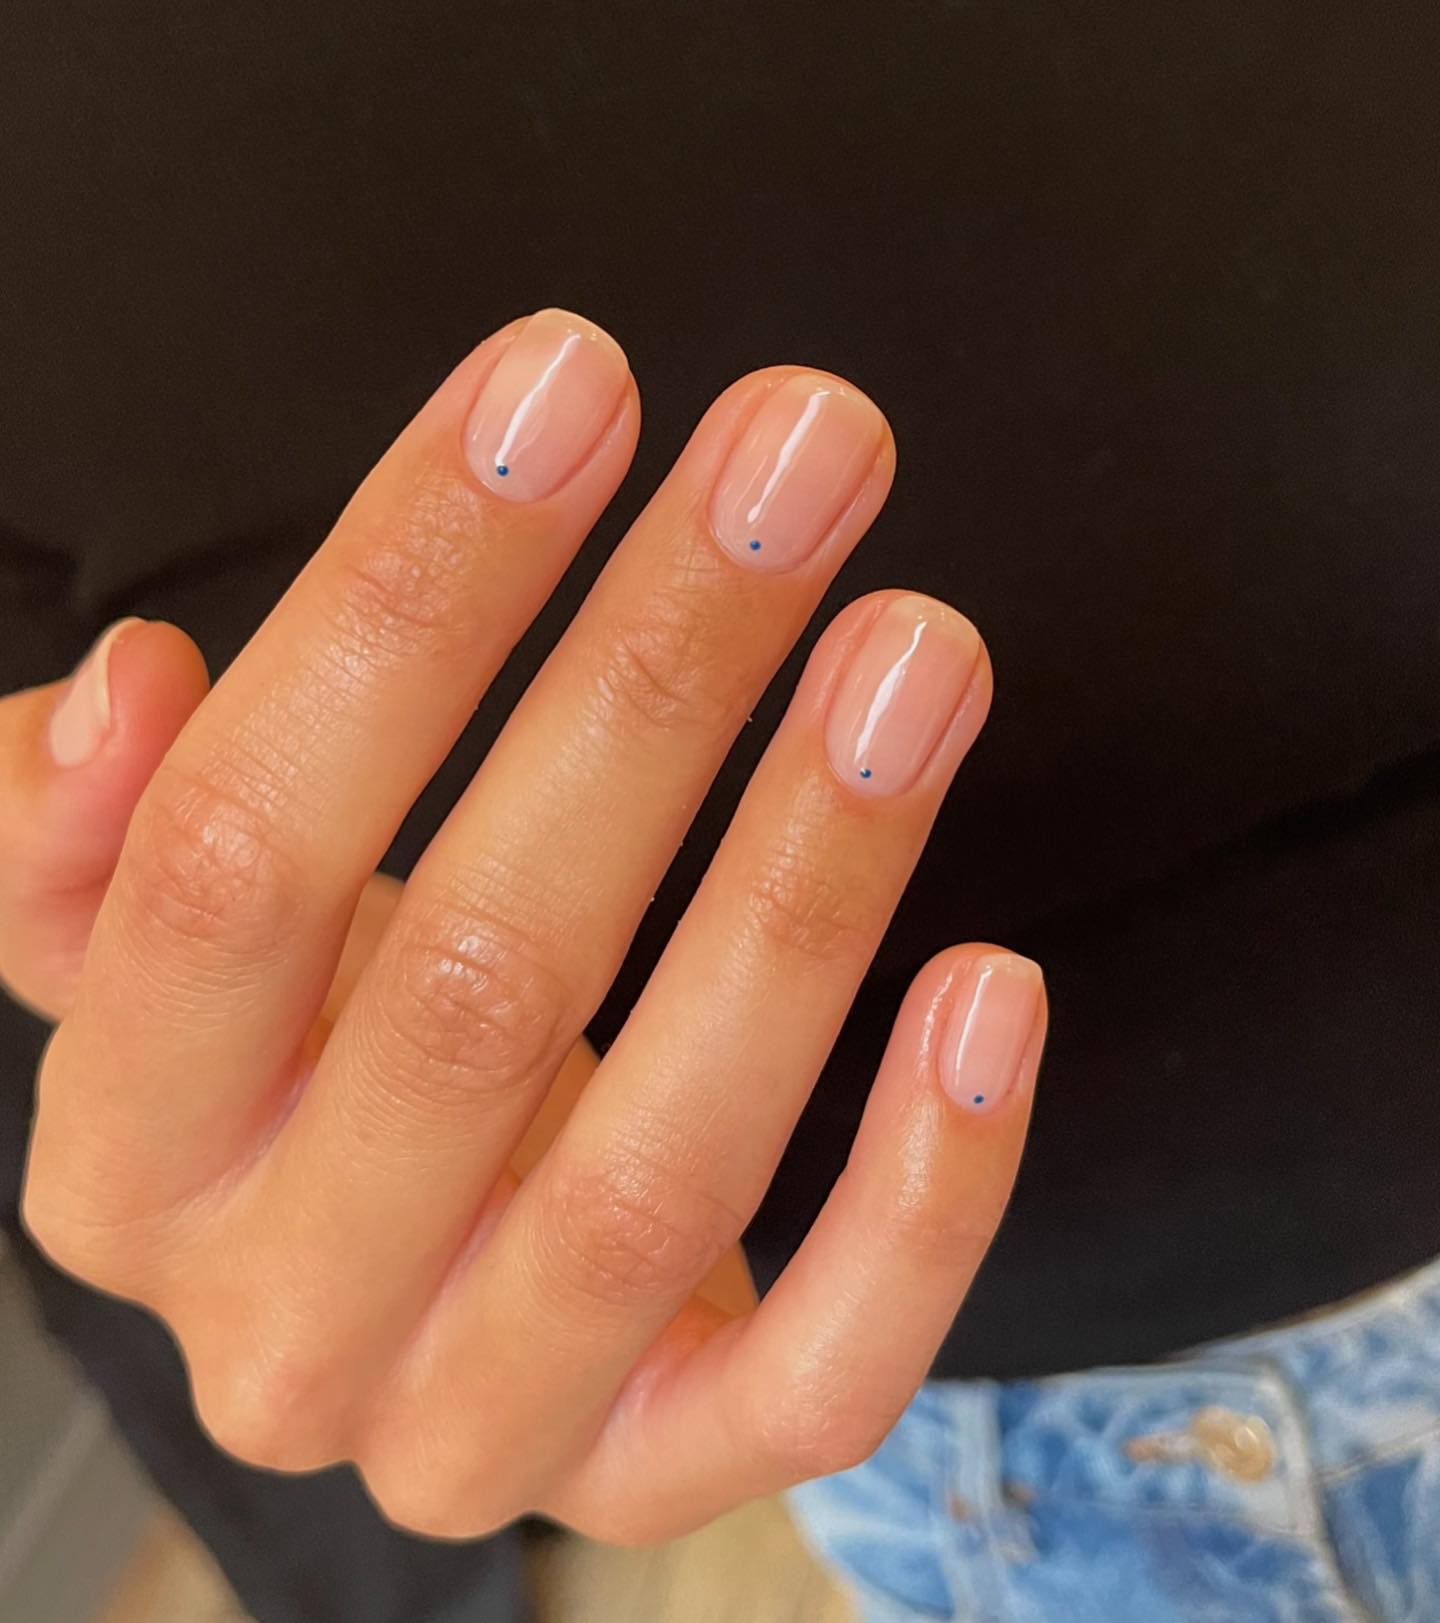 Plain color nails | Dreamy Nails